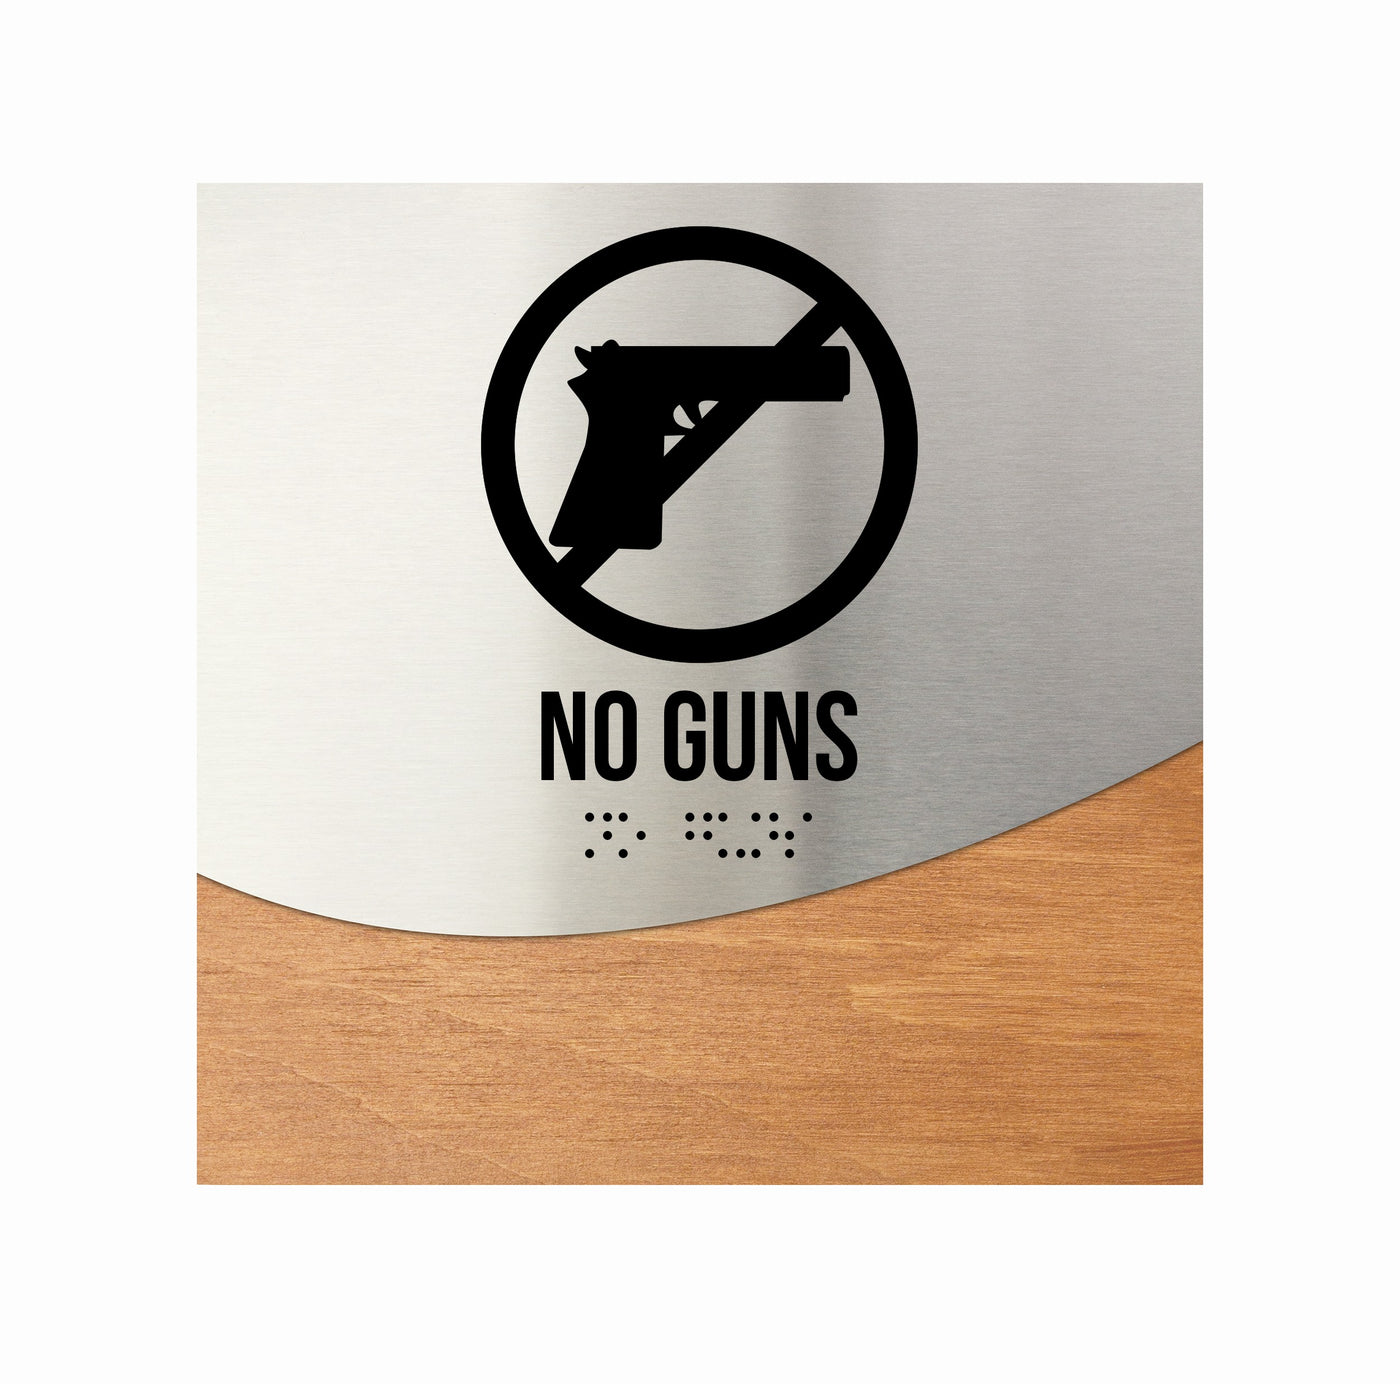 Door Signs - No Guns Sign Steel & Wood "Jure" Design